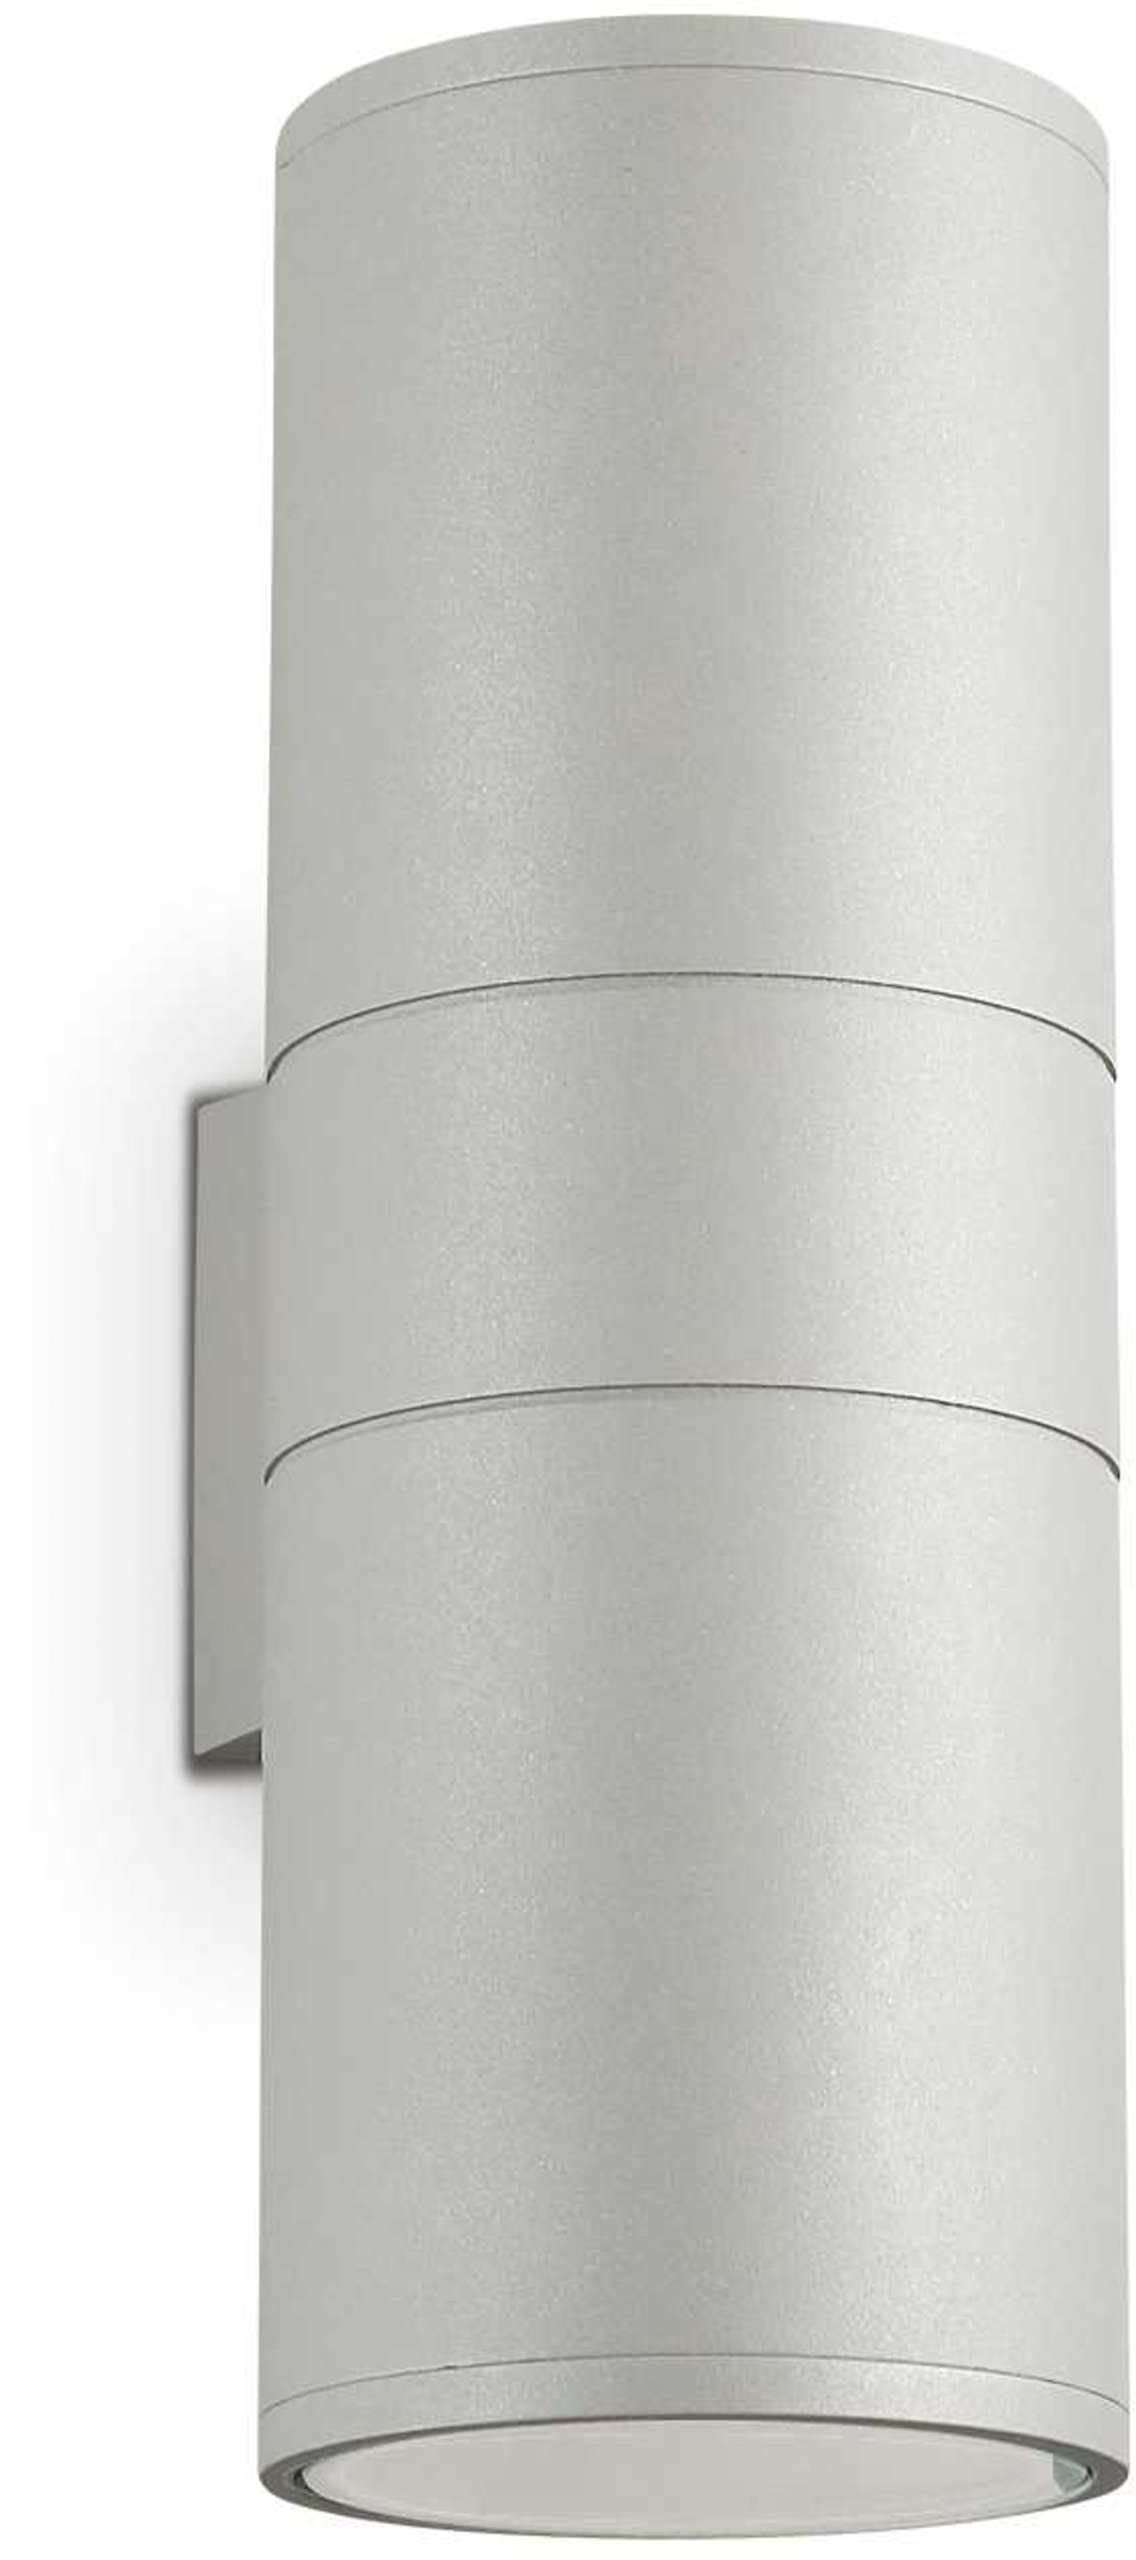 Billede af Gun, Udendørs væglampe, Ap2, aluminium by Ideal Lux (H: 31 cm. x B: 15 cm. x L: 11 cm., Grå)